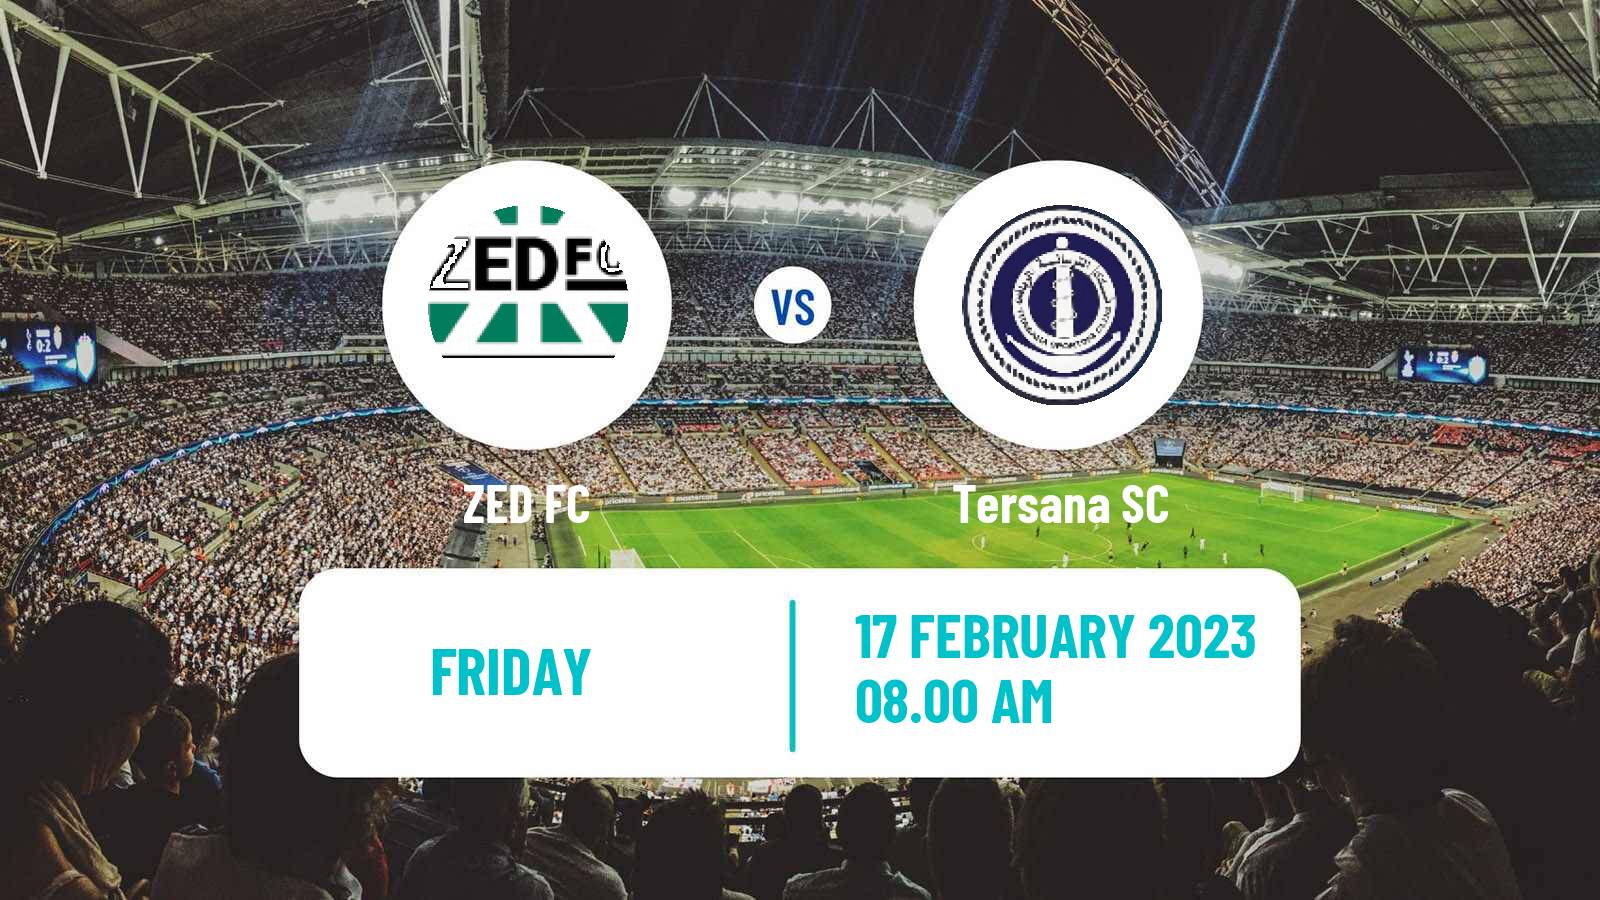 Soccer Egyptian Division 2 - Group B ZED - Tersana